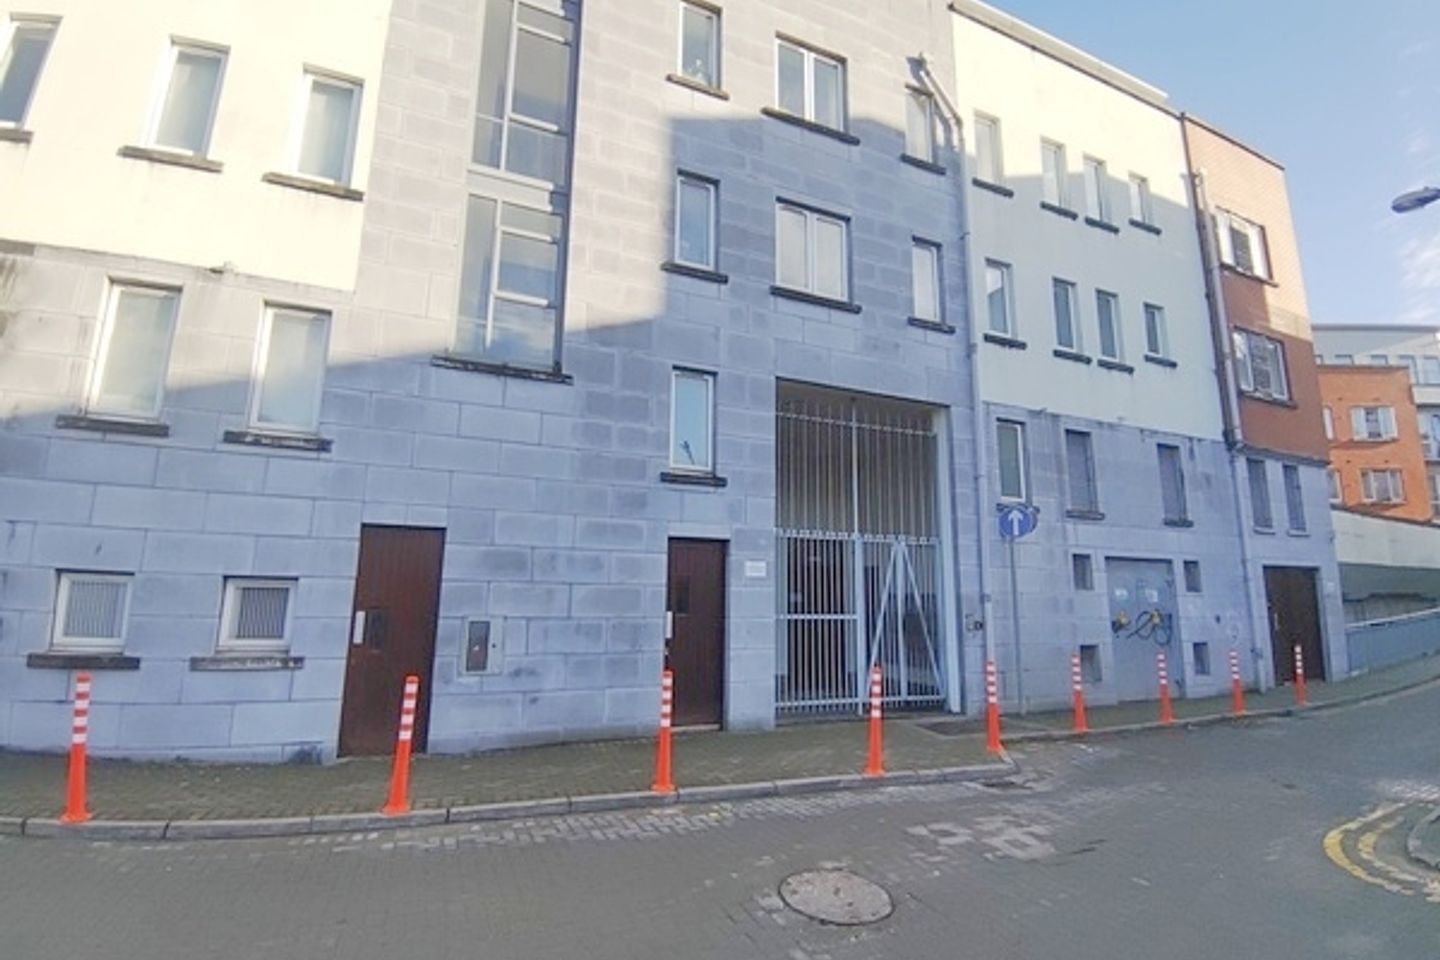 Apartment 112, Abbey River Court, Limerick City, Co. Limerick